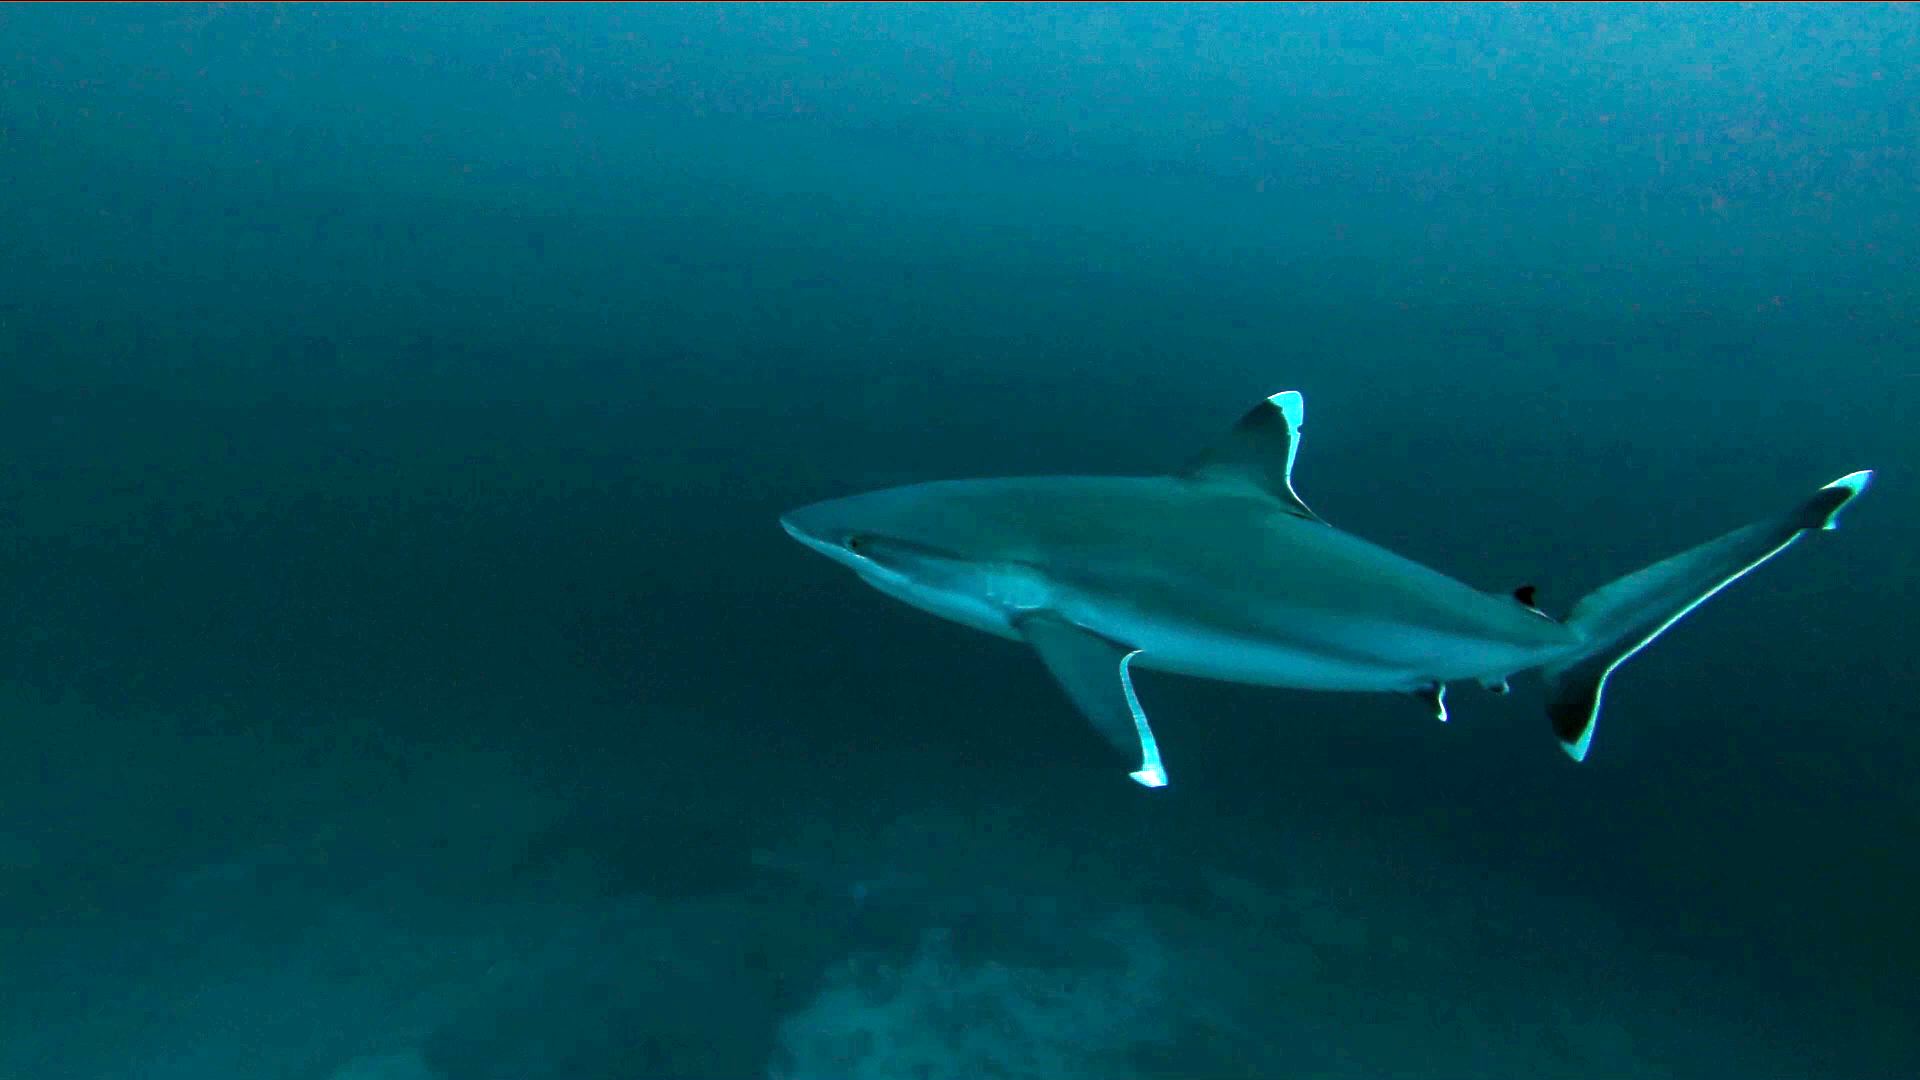 The silvertip Shark - Carcharhinus albimarginatus - Squalo dalle punte argentee - intotheblue.it